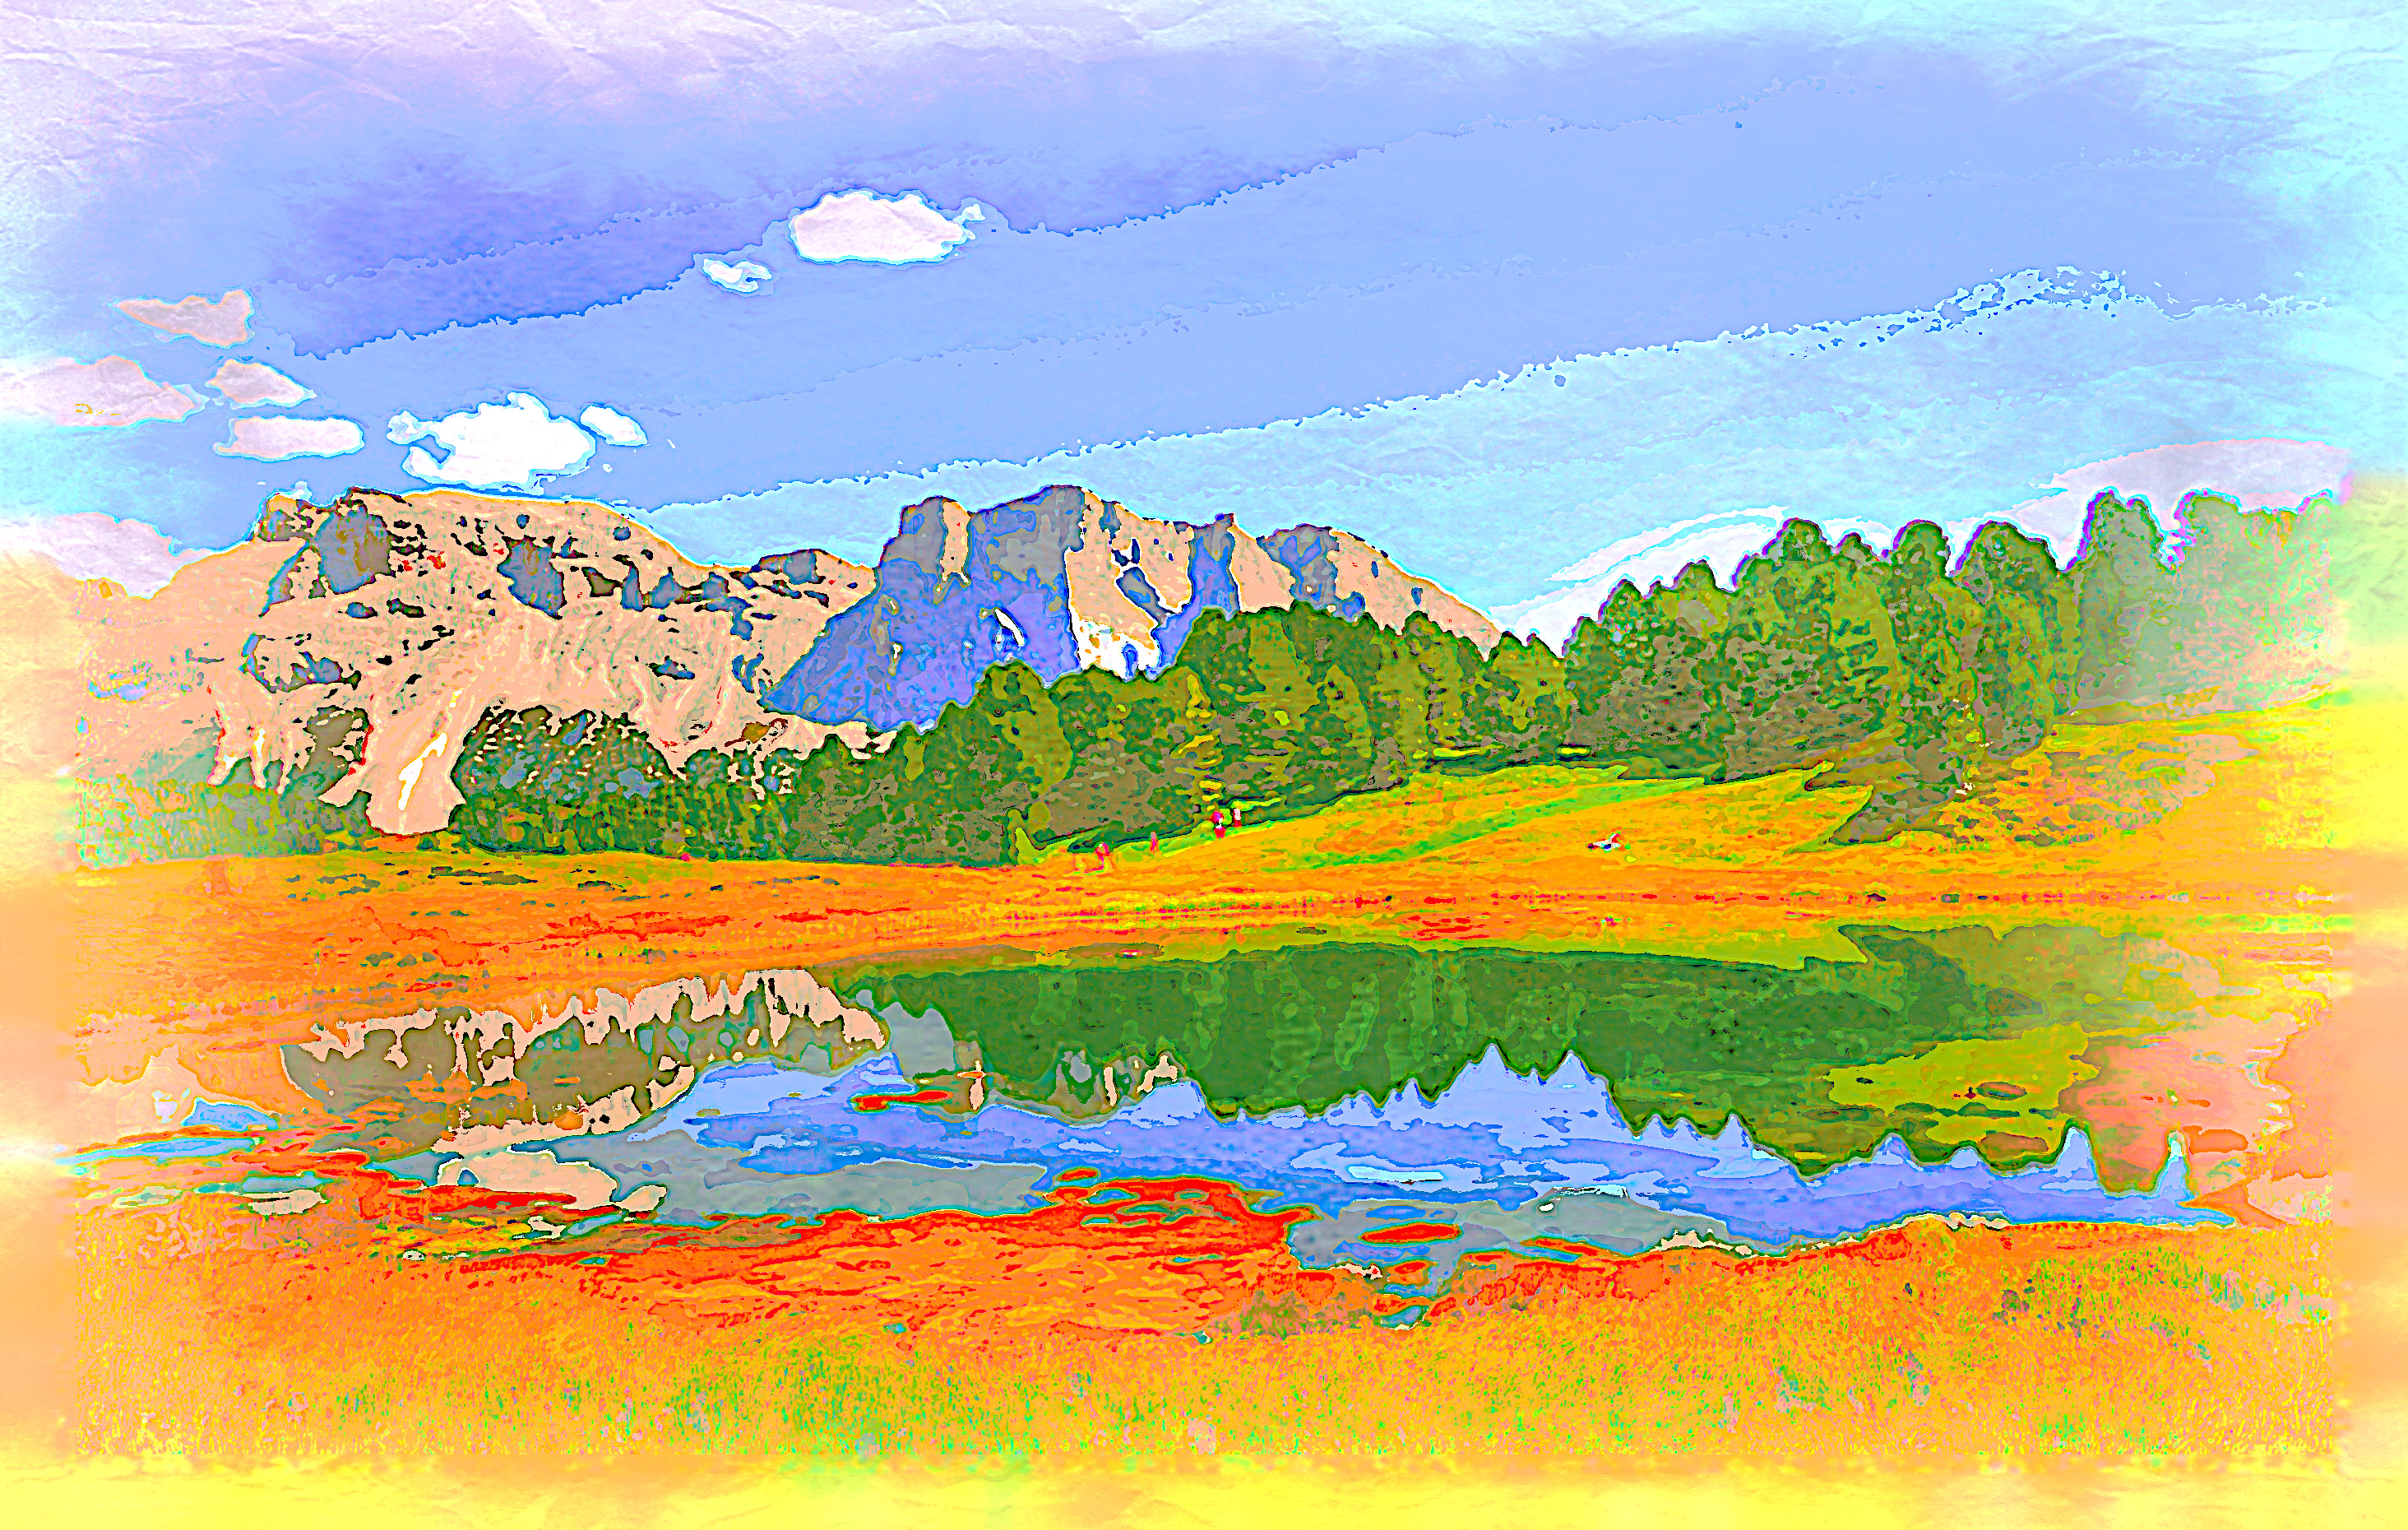 2020-04-05 07-21-19 dolomites-2580866 as a digital aquarel, using18 colours, source landscape, look contrast plus.jpg